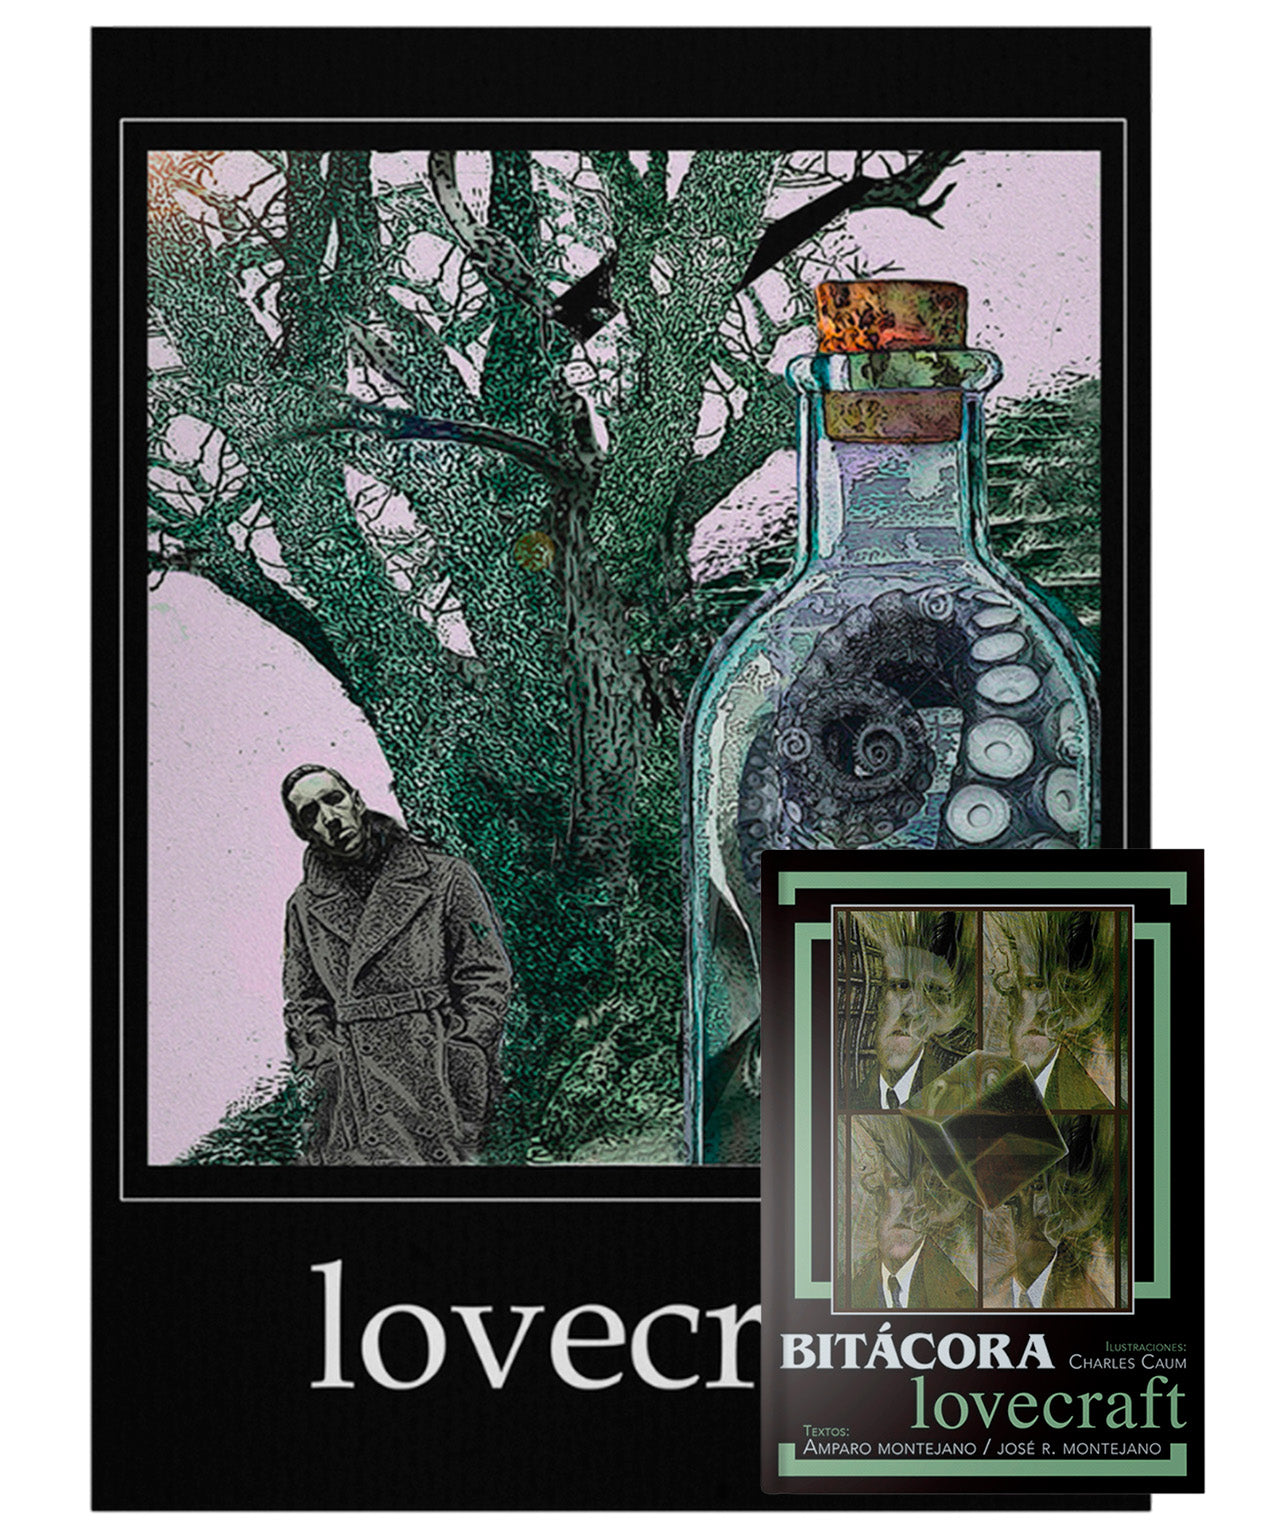 Porfolio Lovecraft